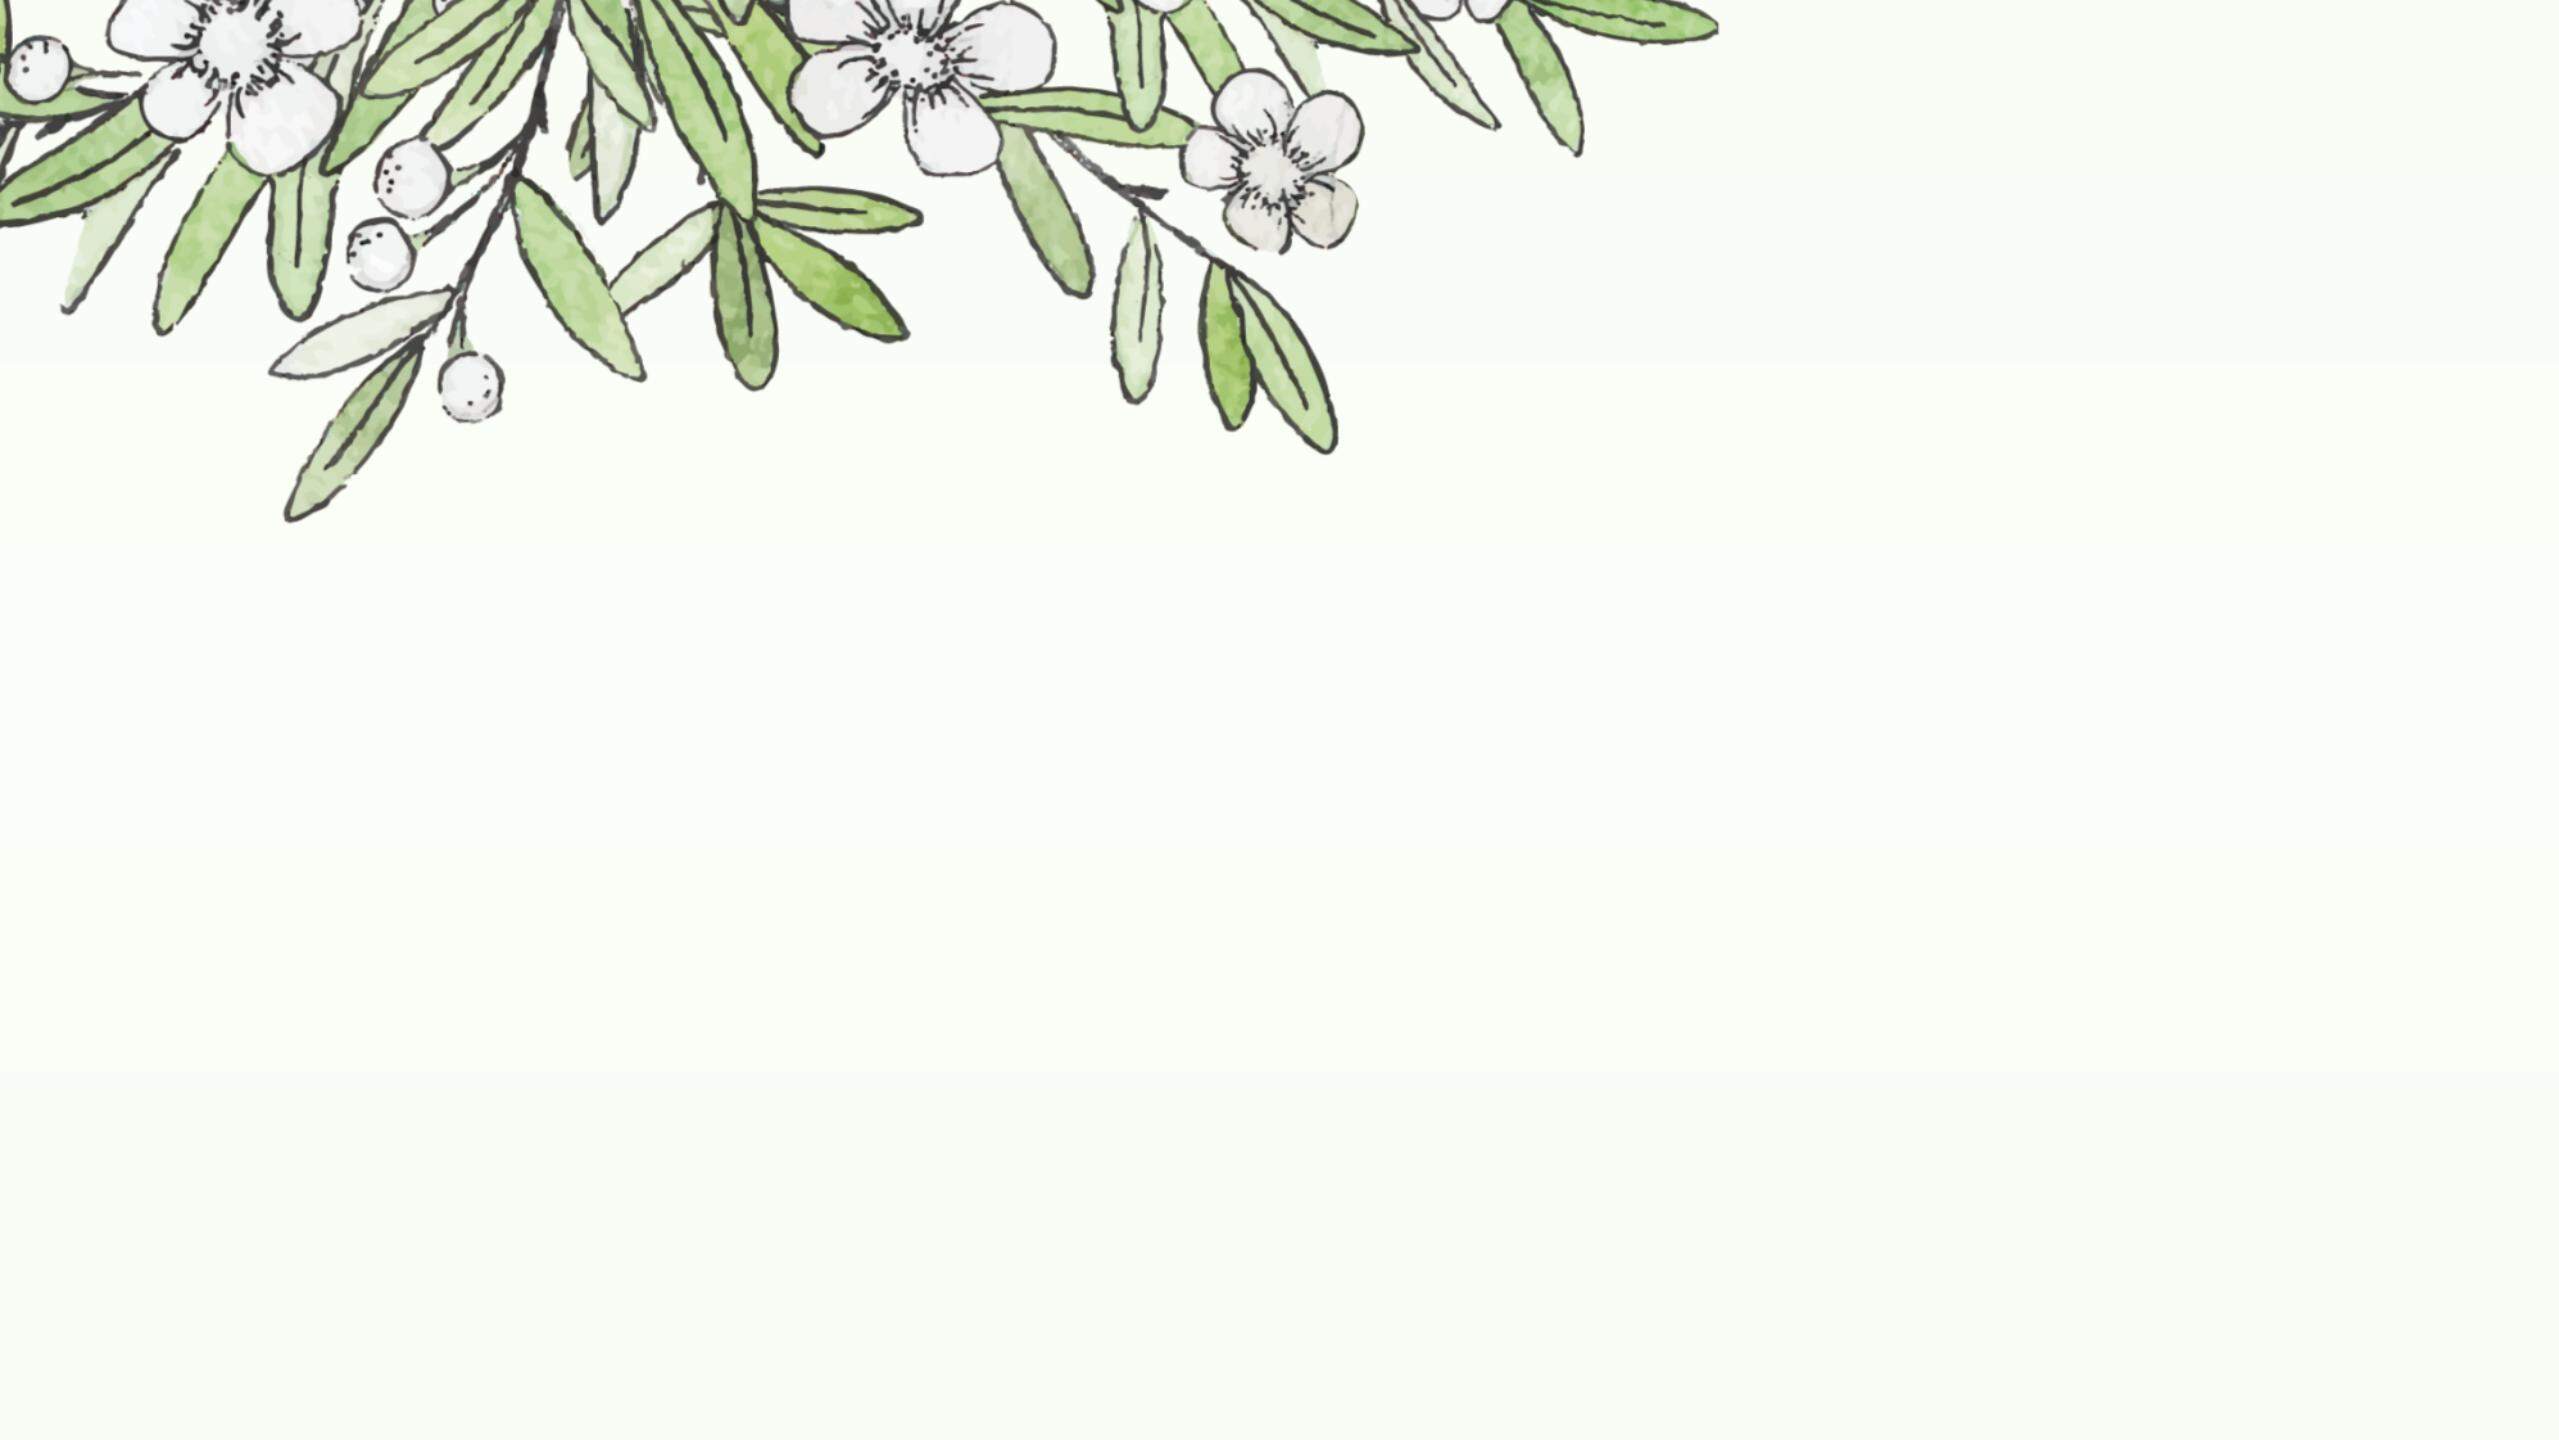 四张水彩绿叶白花植物PPT背景图片